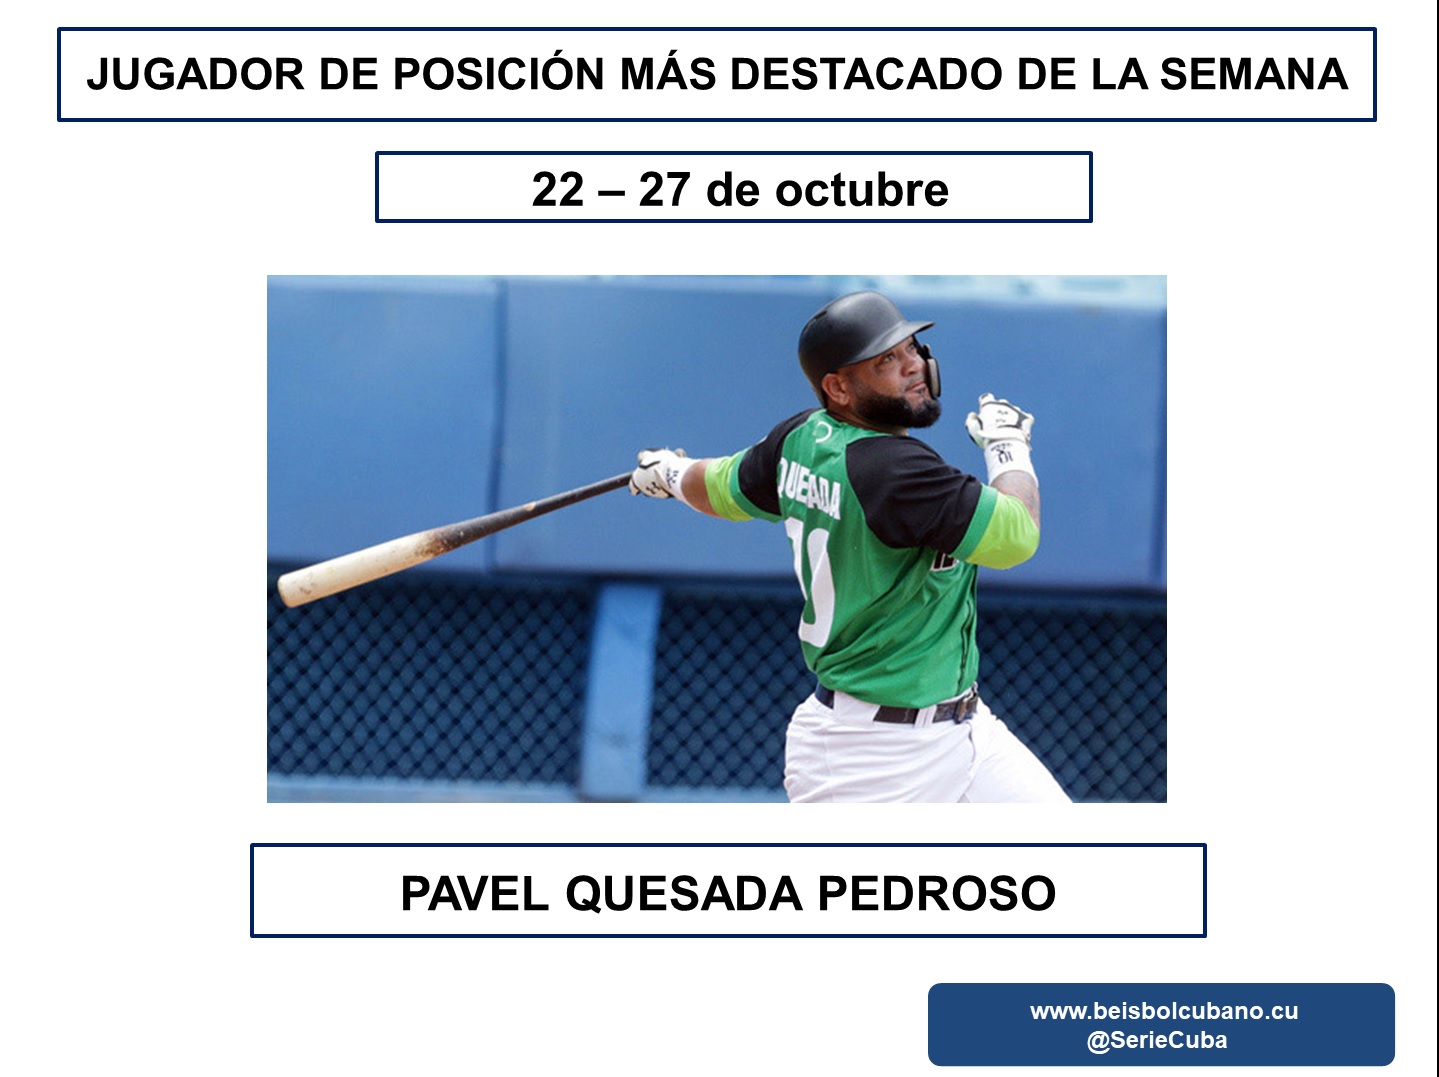  El cienfueguero Pavel Quesada ha sido uno de los jugadores más destacados, que hemos tenido en la I Liga Élite del Béisbol Cubano (LEBC) y esto lo hizo merecedor, por segunda vez, de la distinción de mejor bateador de la semana